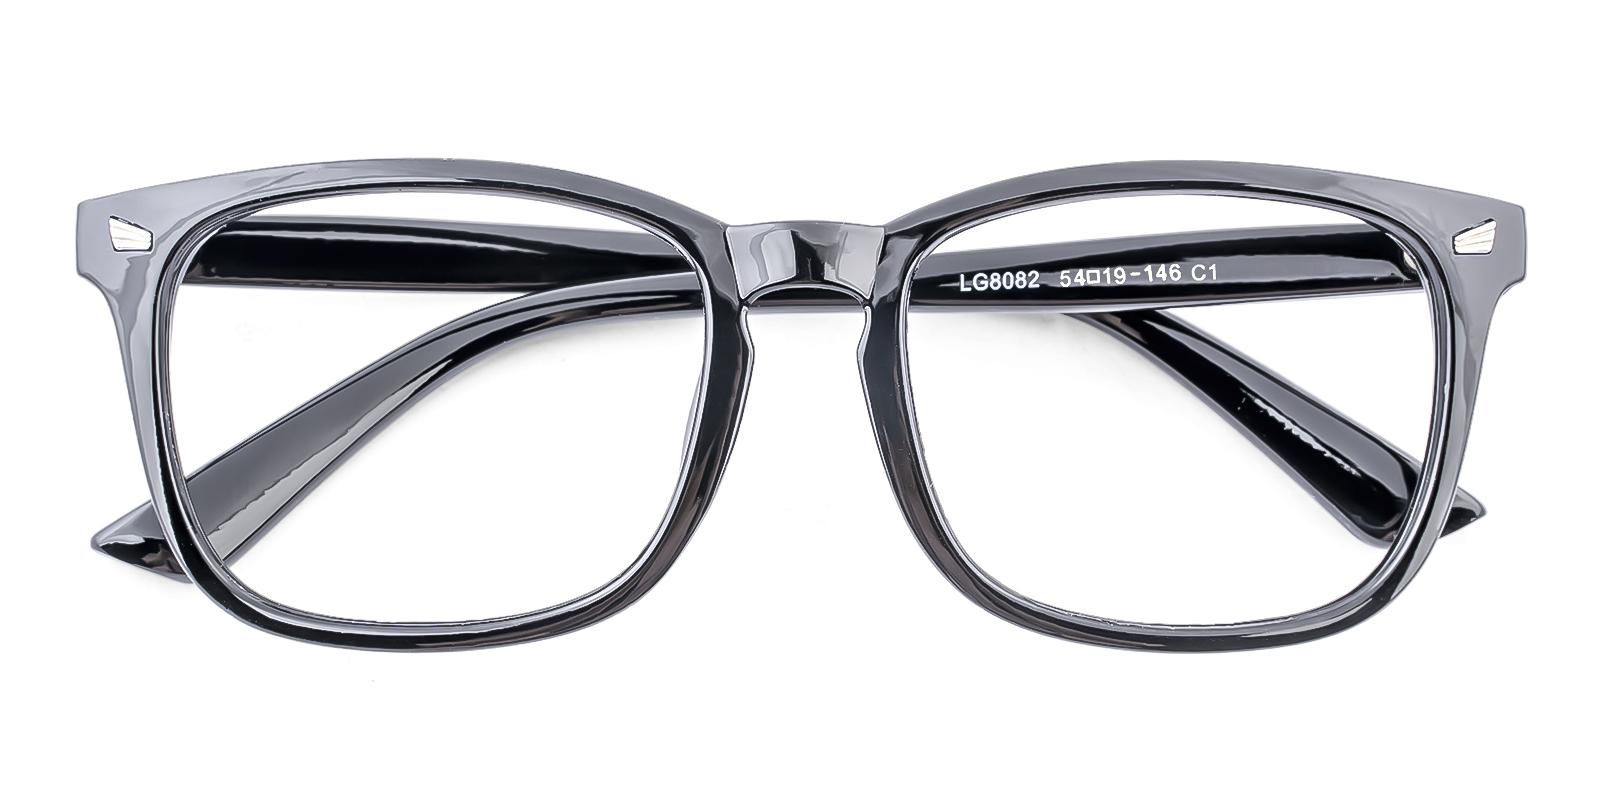 Reducely Black Plastic Eyeglasses , UniversalBridgeFit Frames from ABBE Glasses